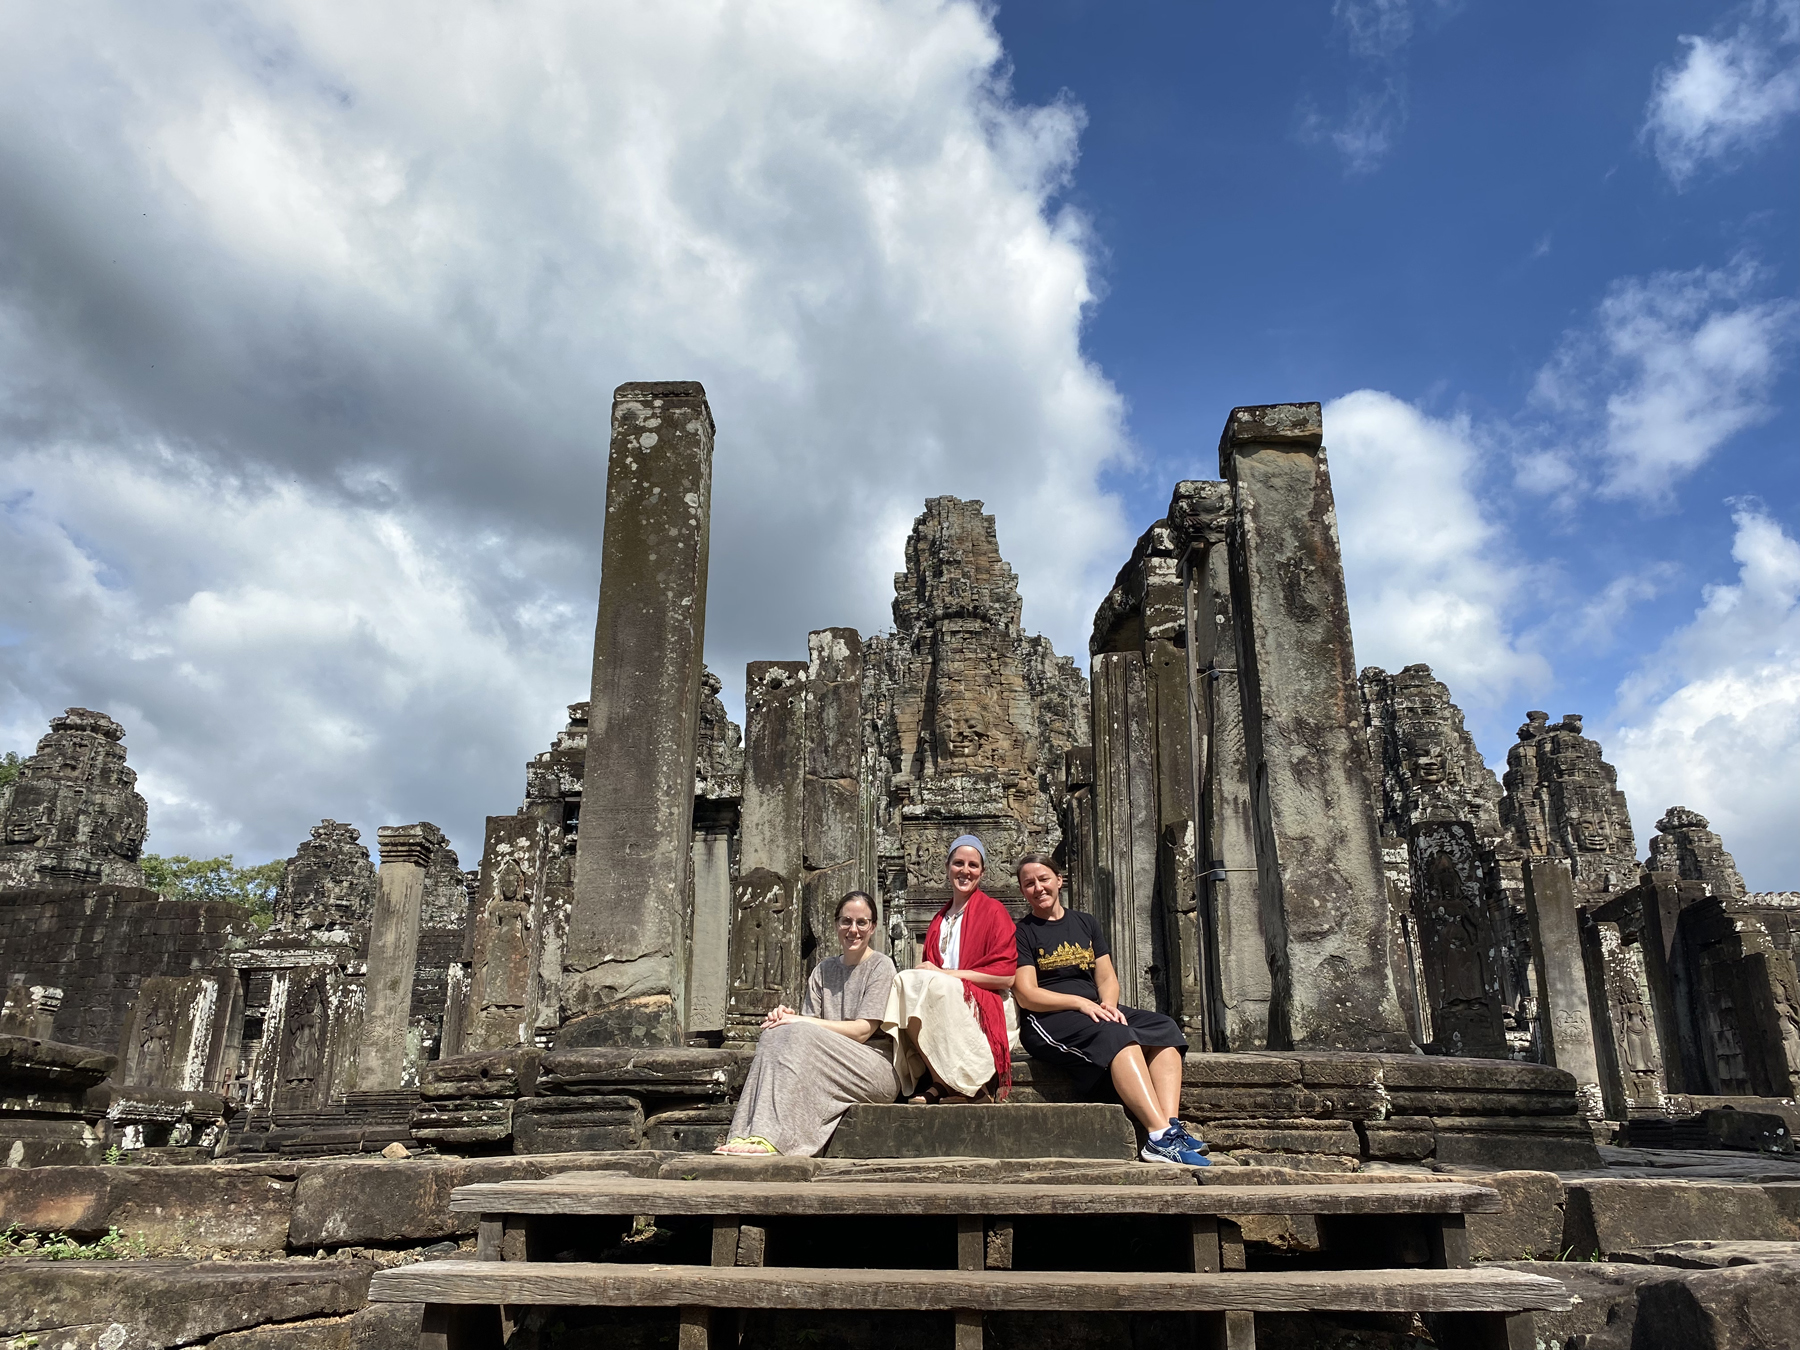 Three women at Angkor Wat